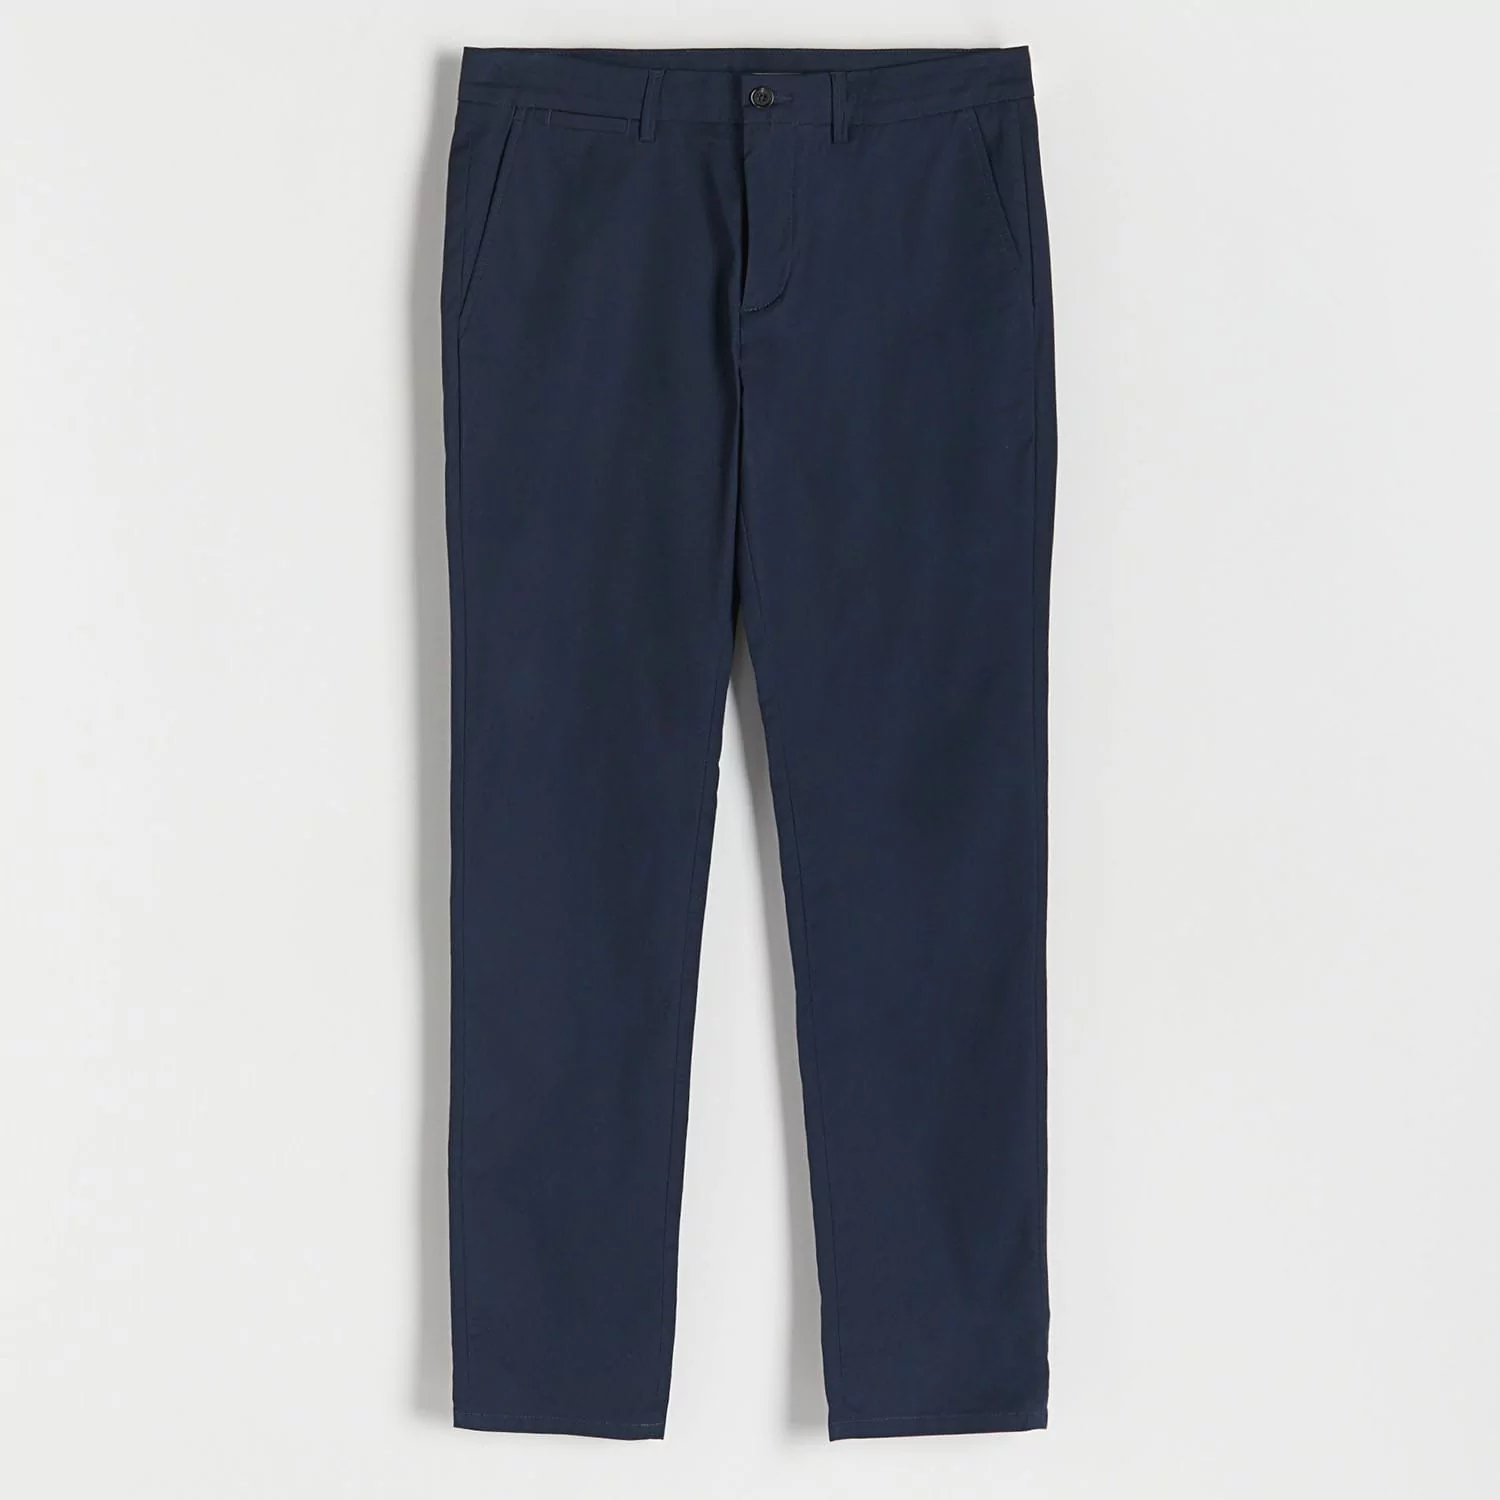 Reserved - Spodnie chino slim fit - Niebieski